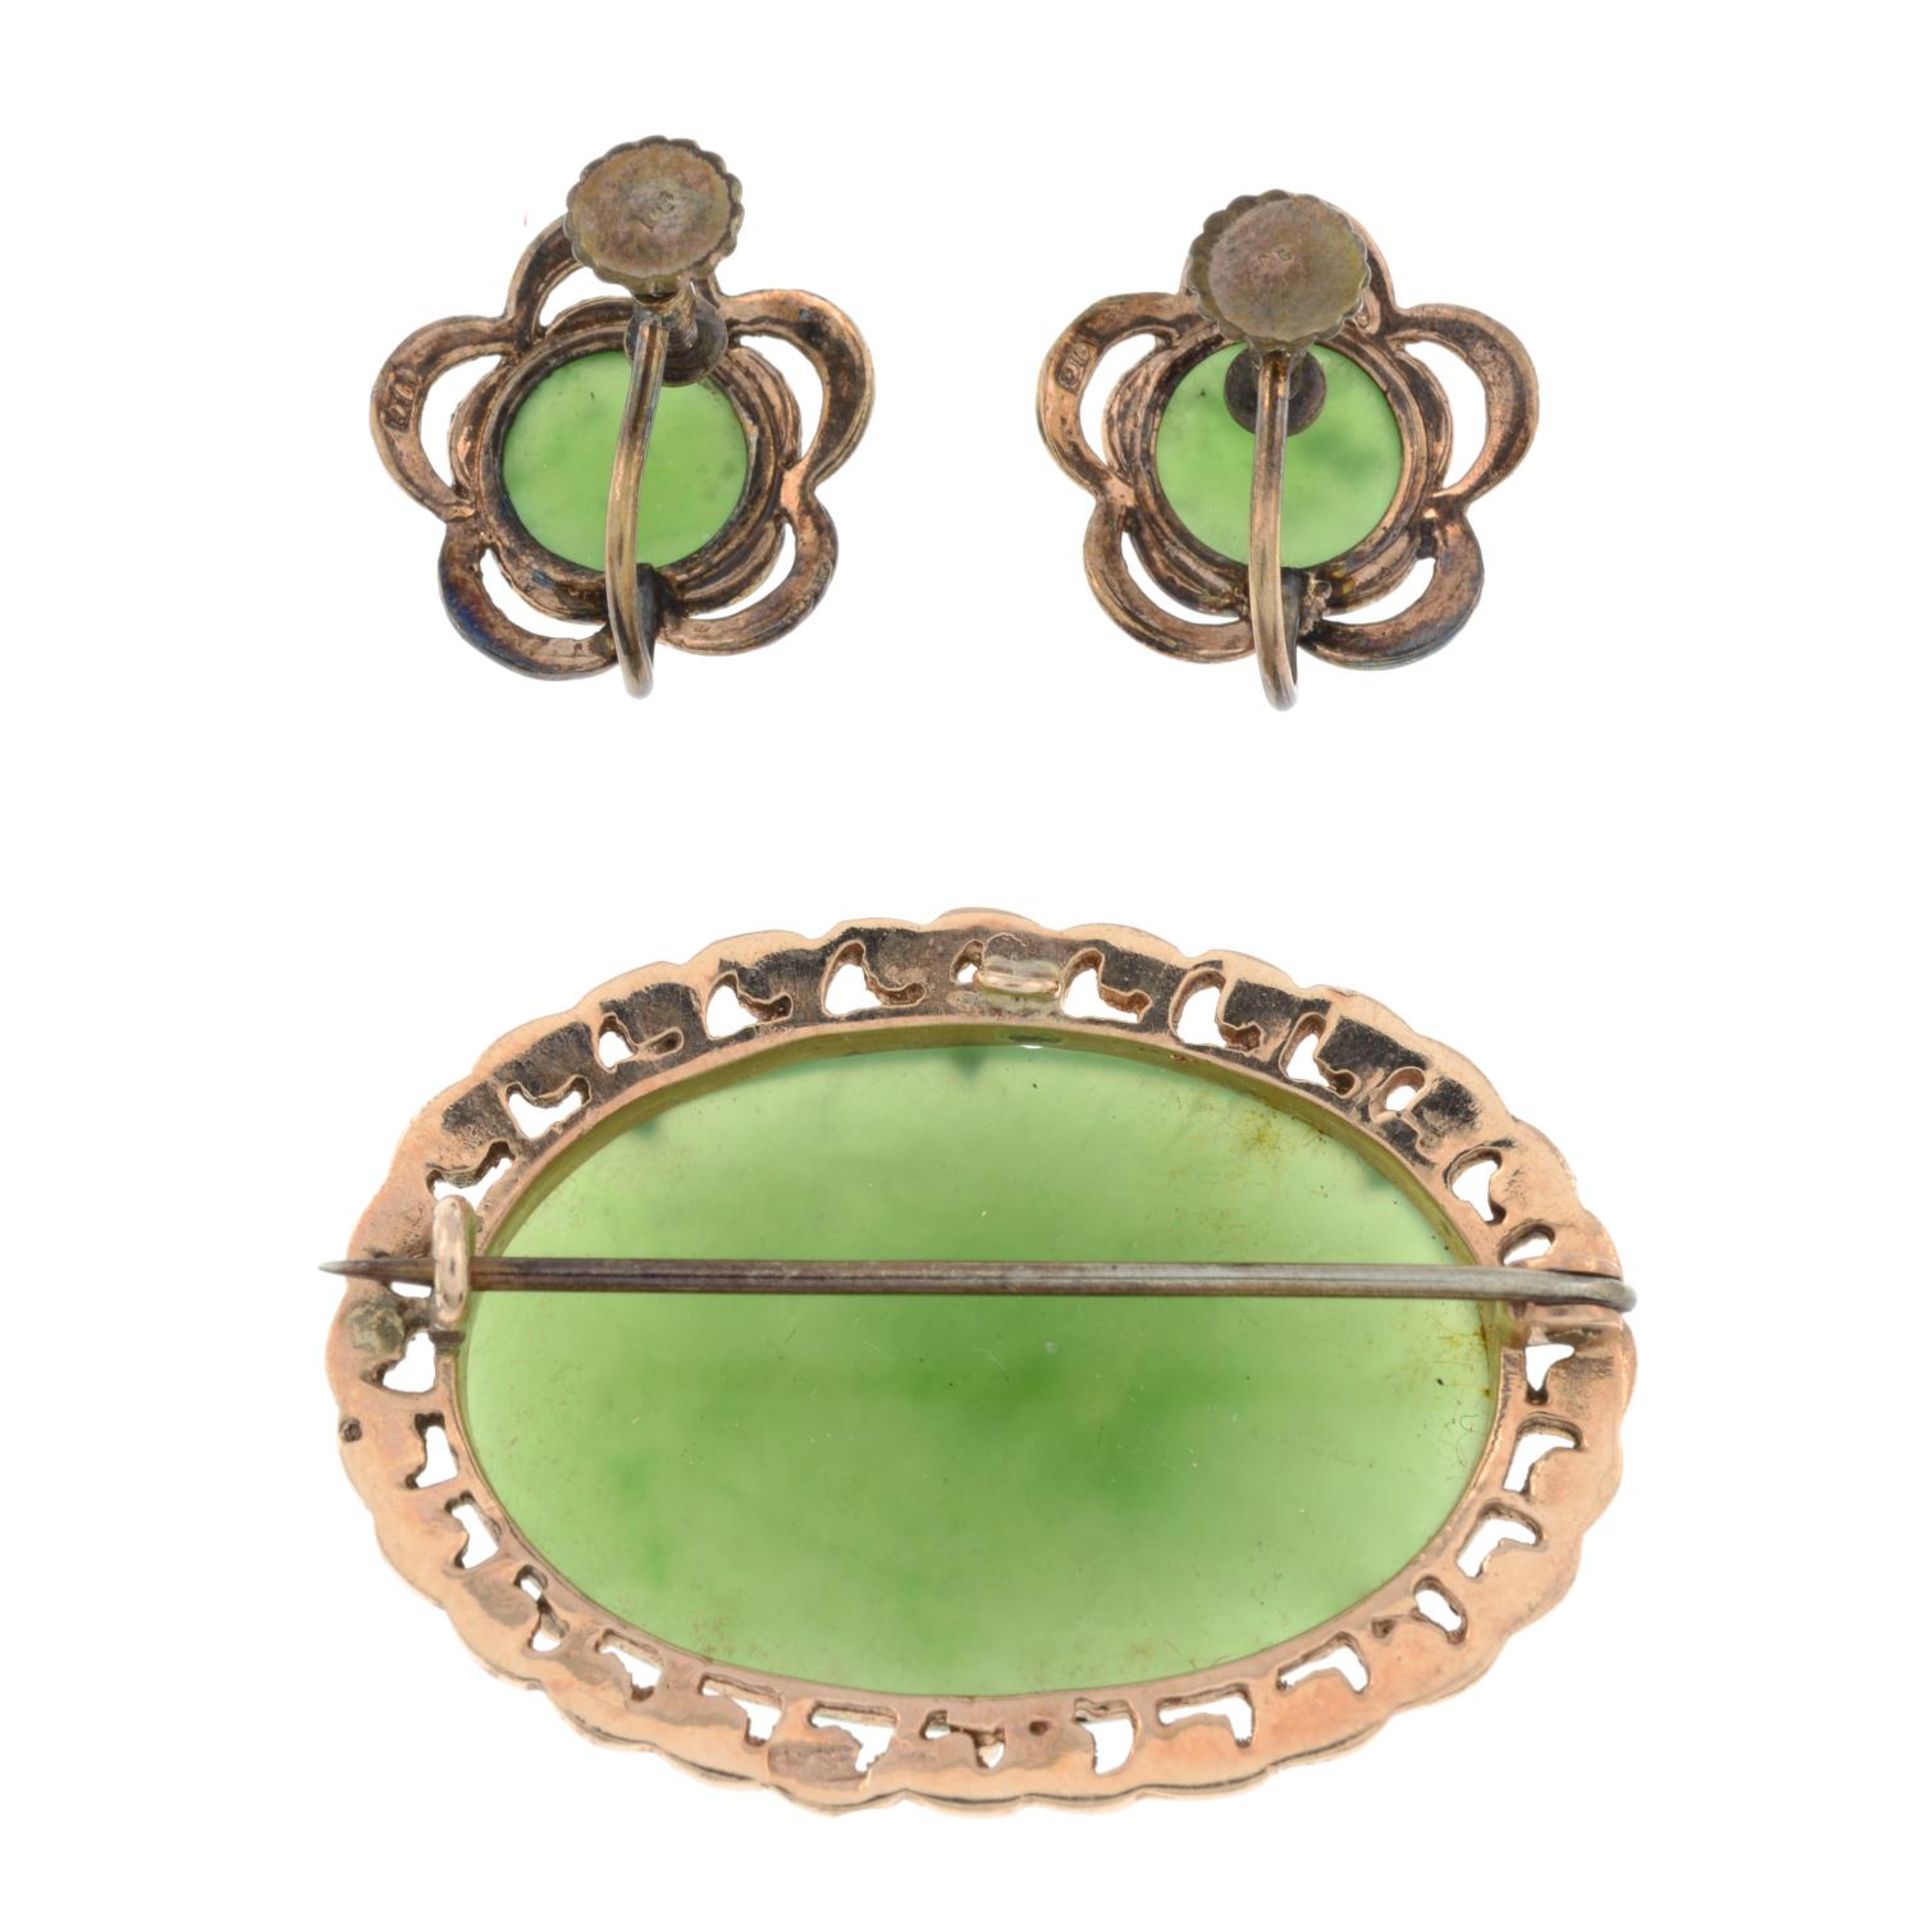 A jade brooch and a pair of jade earrings. - Image 2 of 5